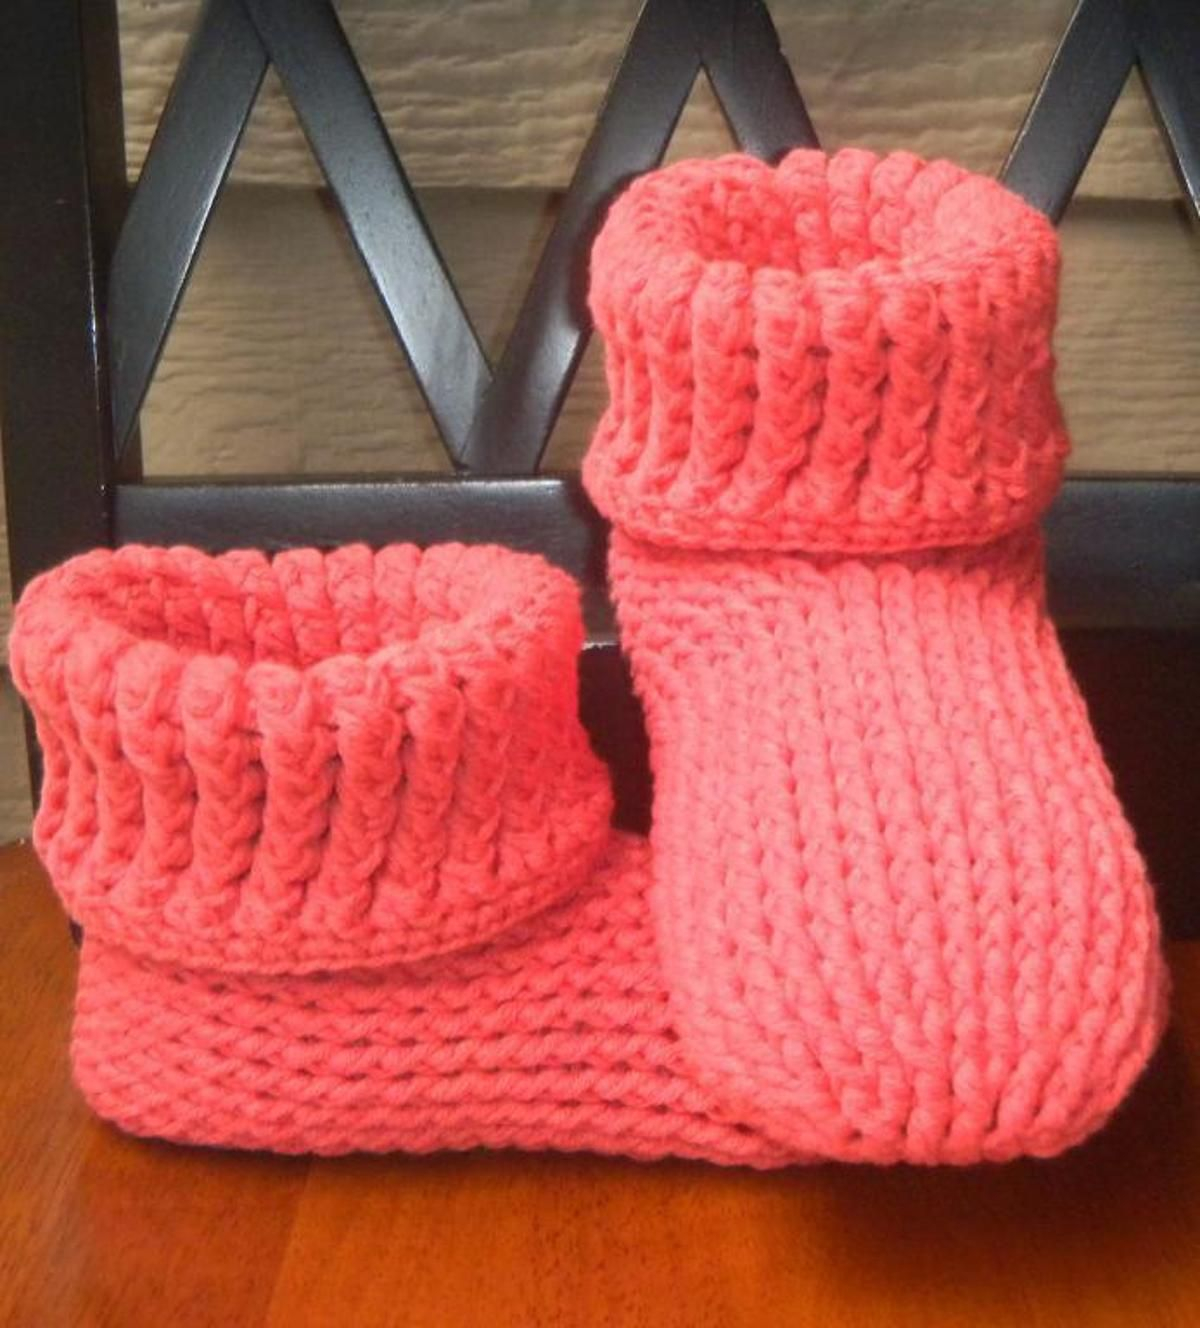 Crochet Slipper Boots Free Pattern Knit Look Slipper Boots Crochet Adult Crochetknits Pinterest